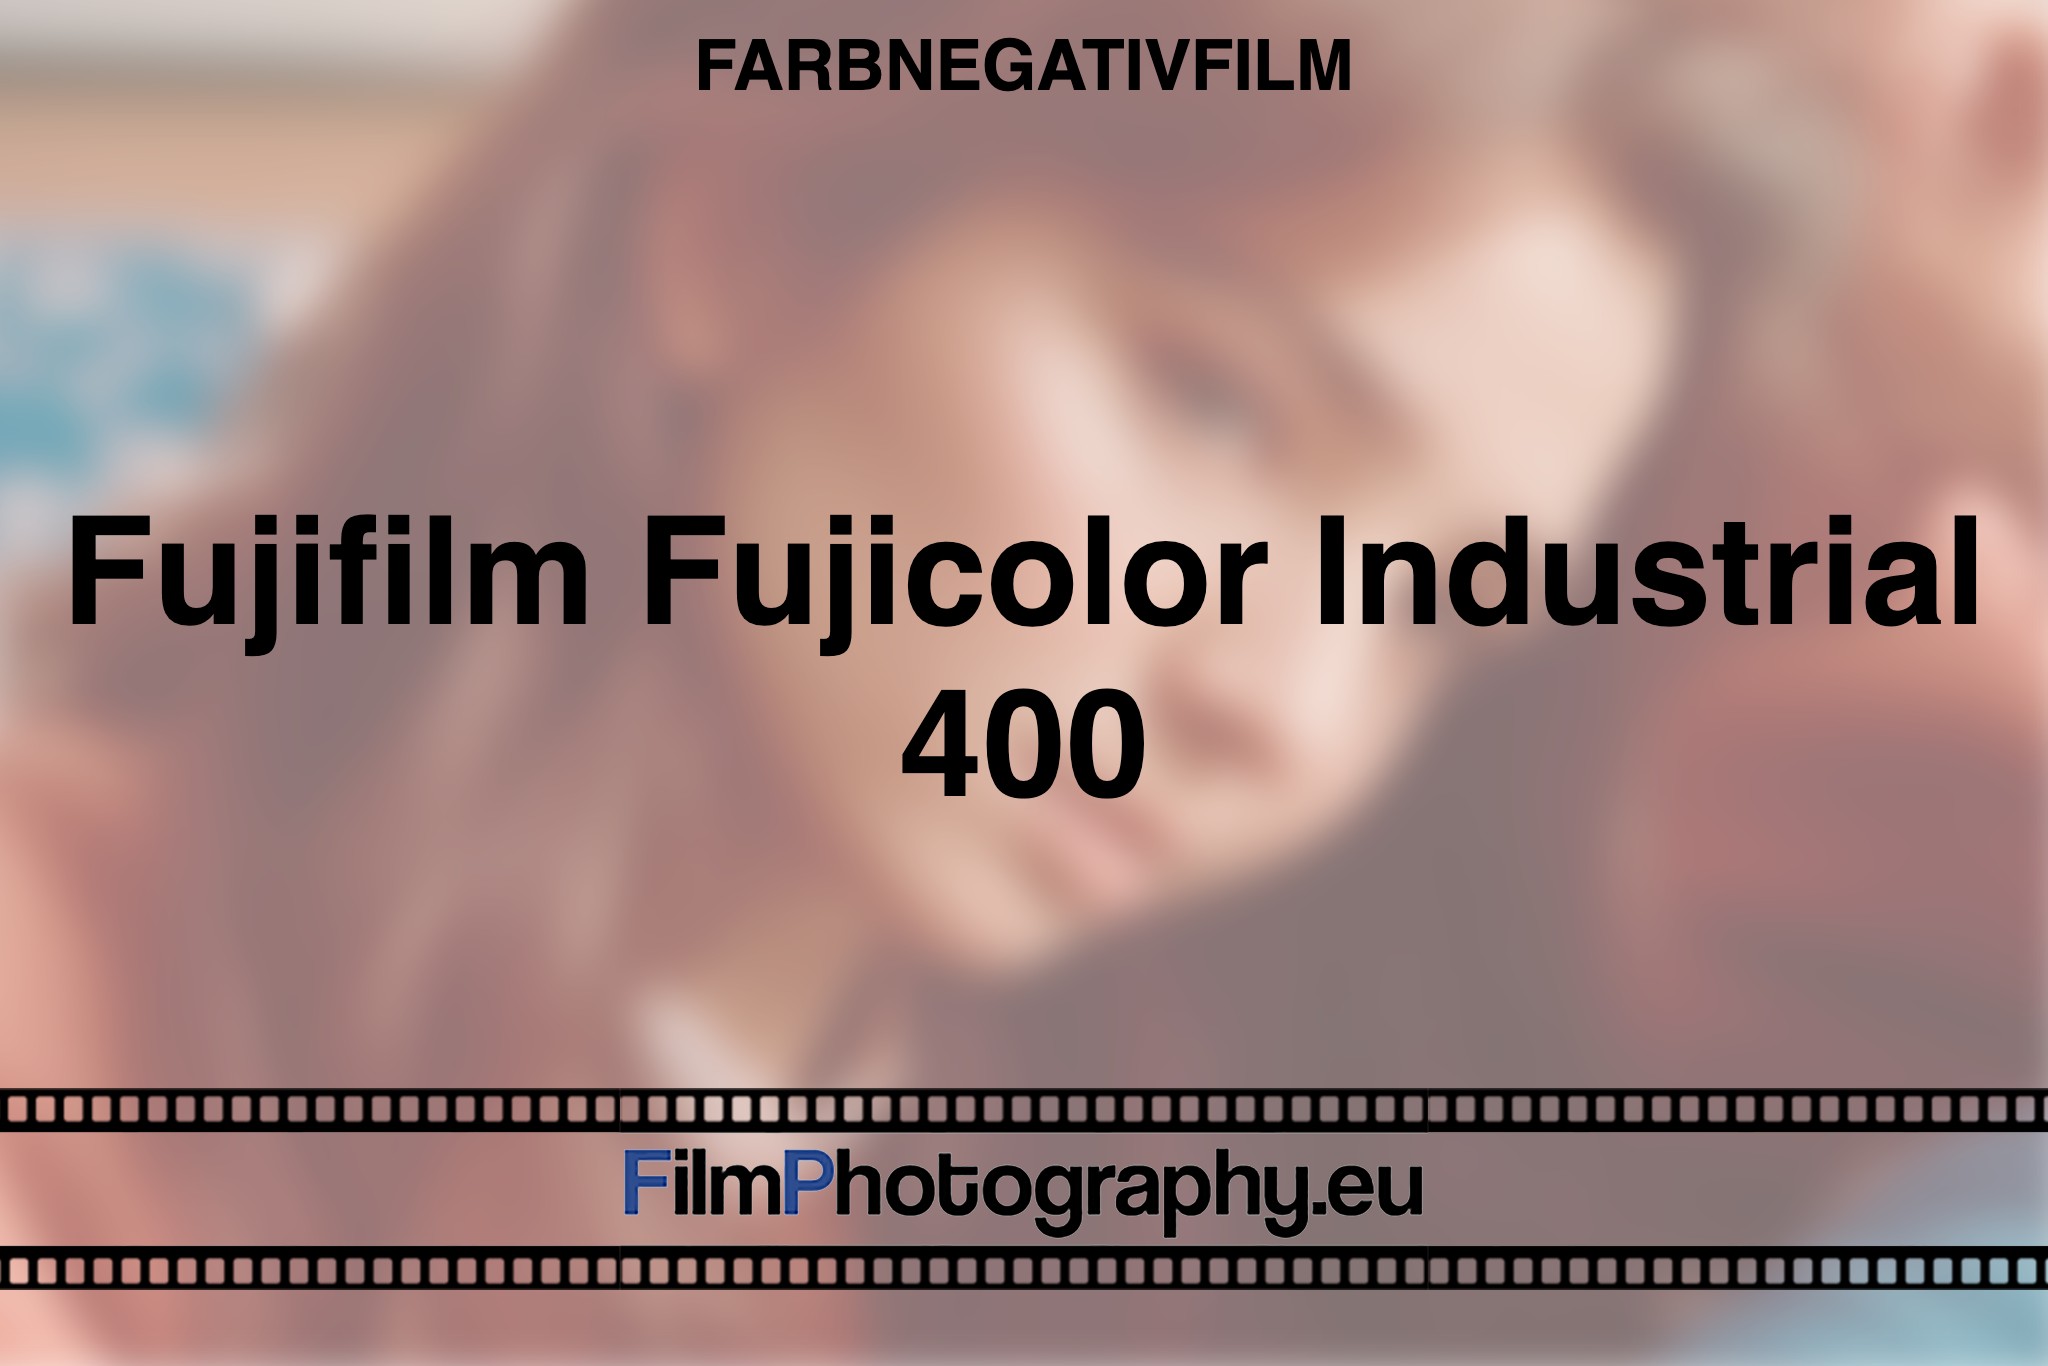 fujifilm-fujicolor-industrial-400-farbnegativfilm-bnv